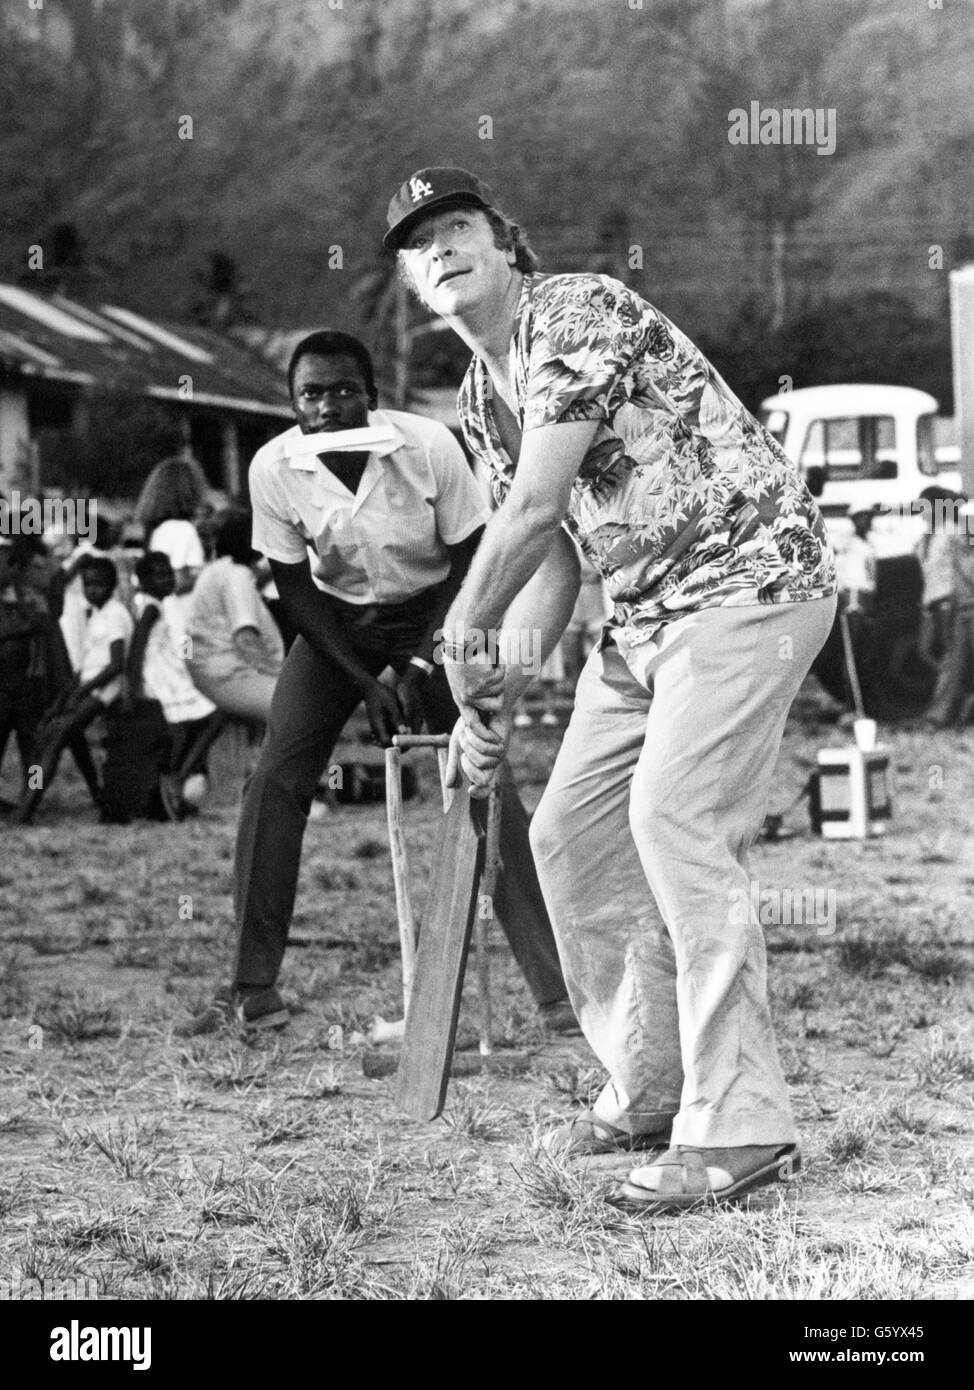 Michael Caine suona il cricket sul set del film comico 'Water', in cui gioca il govenor di una piccola isola. Le riprese si svolgono a St Lucia. Foto Stock